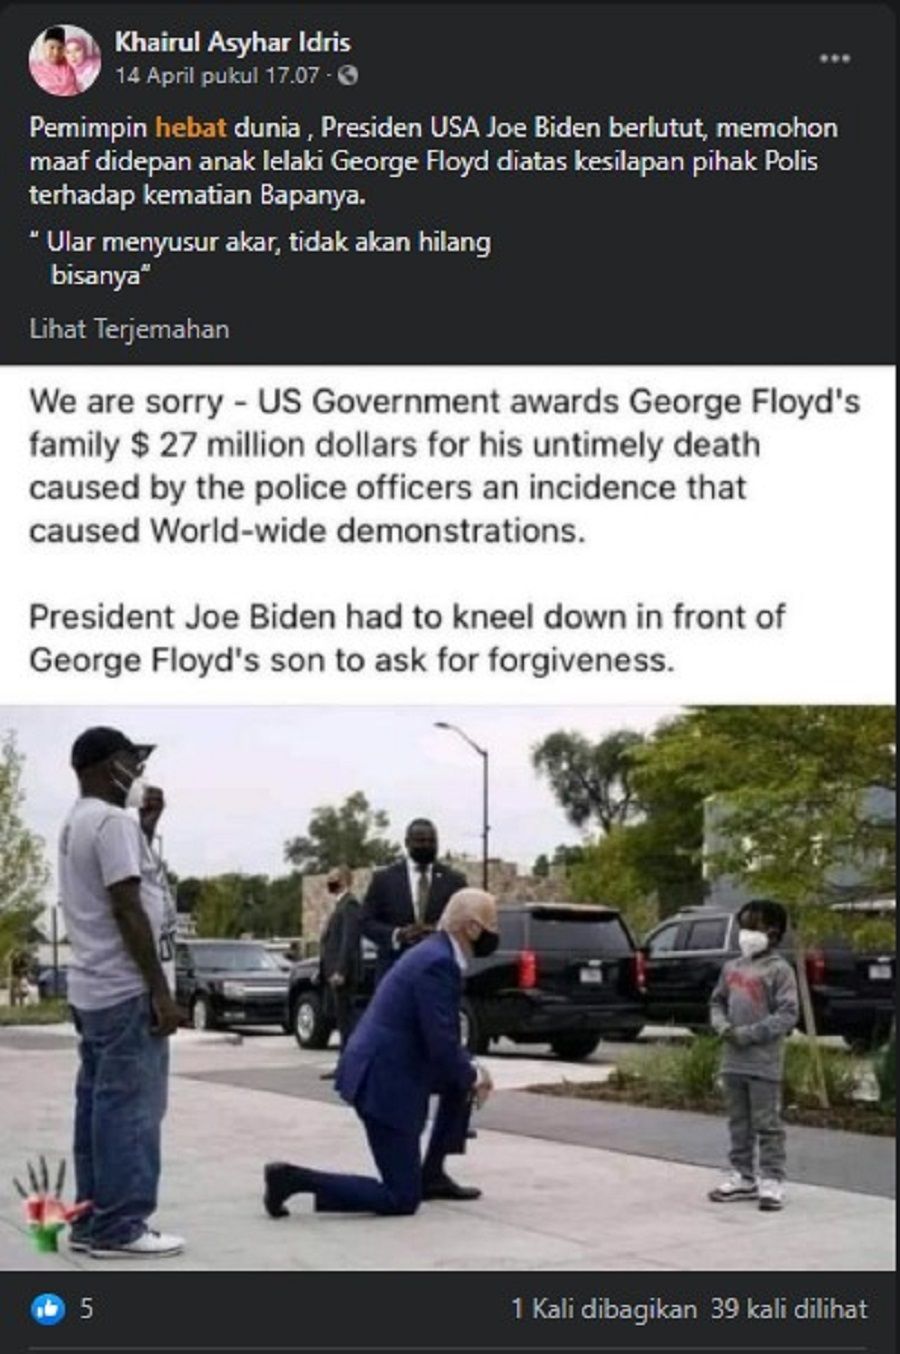 tangkapan layar akun facebook Khairul Asyhar Idris, Pemimpin hebat dunia , Presiden USA Joe Biden berlutut, memohon maaf didepan anak lelaki George Floyd